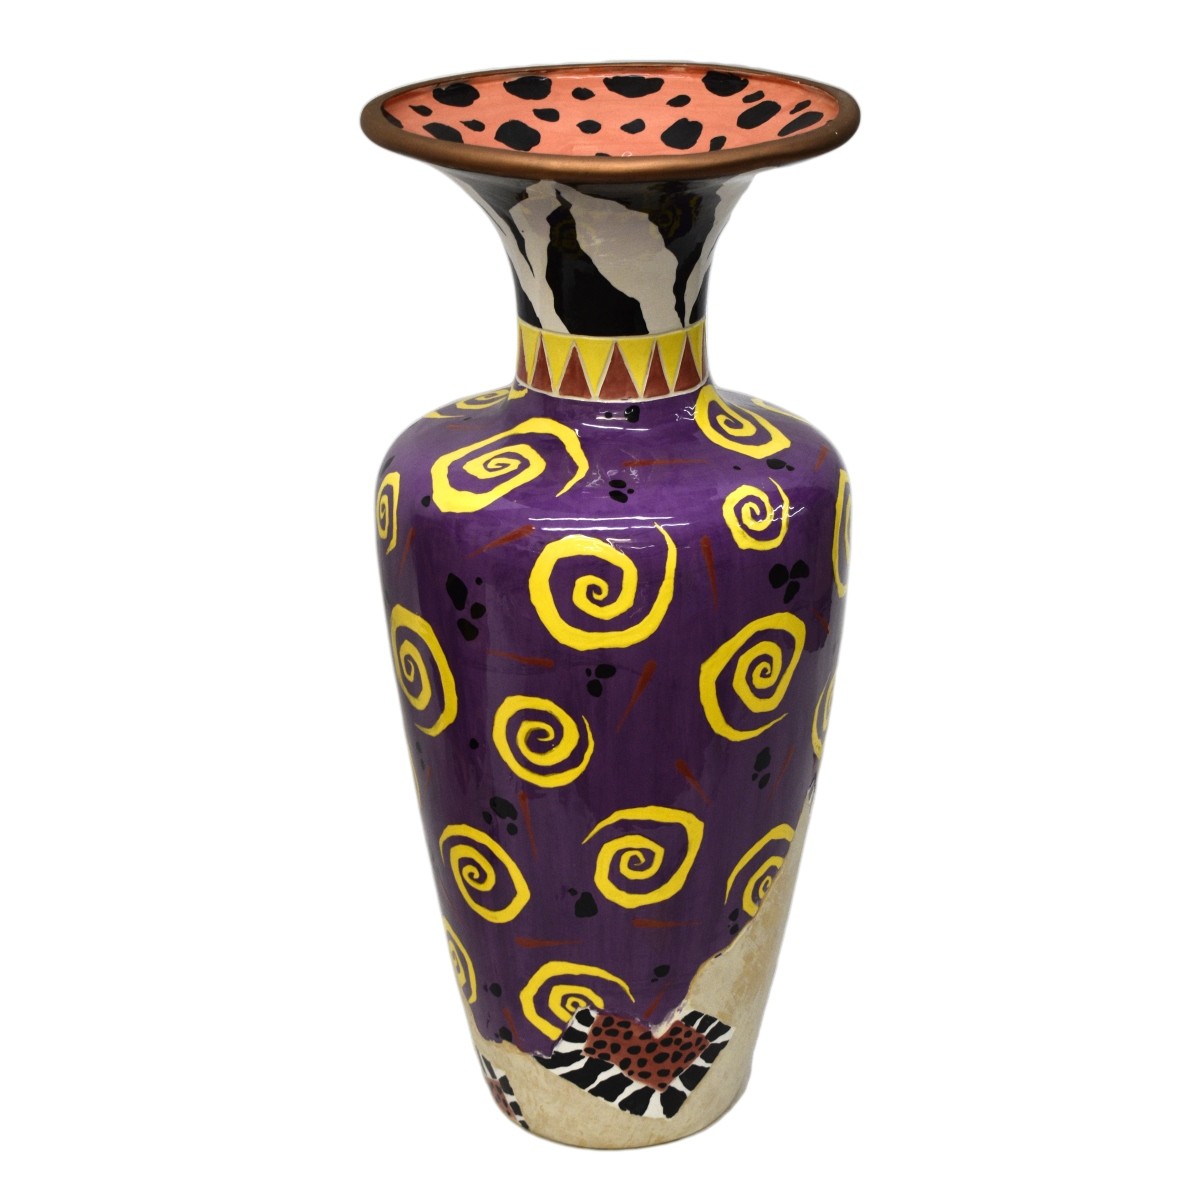 Pair of Postmodern Porcelain Vases